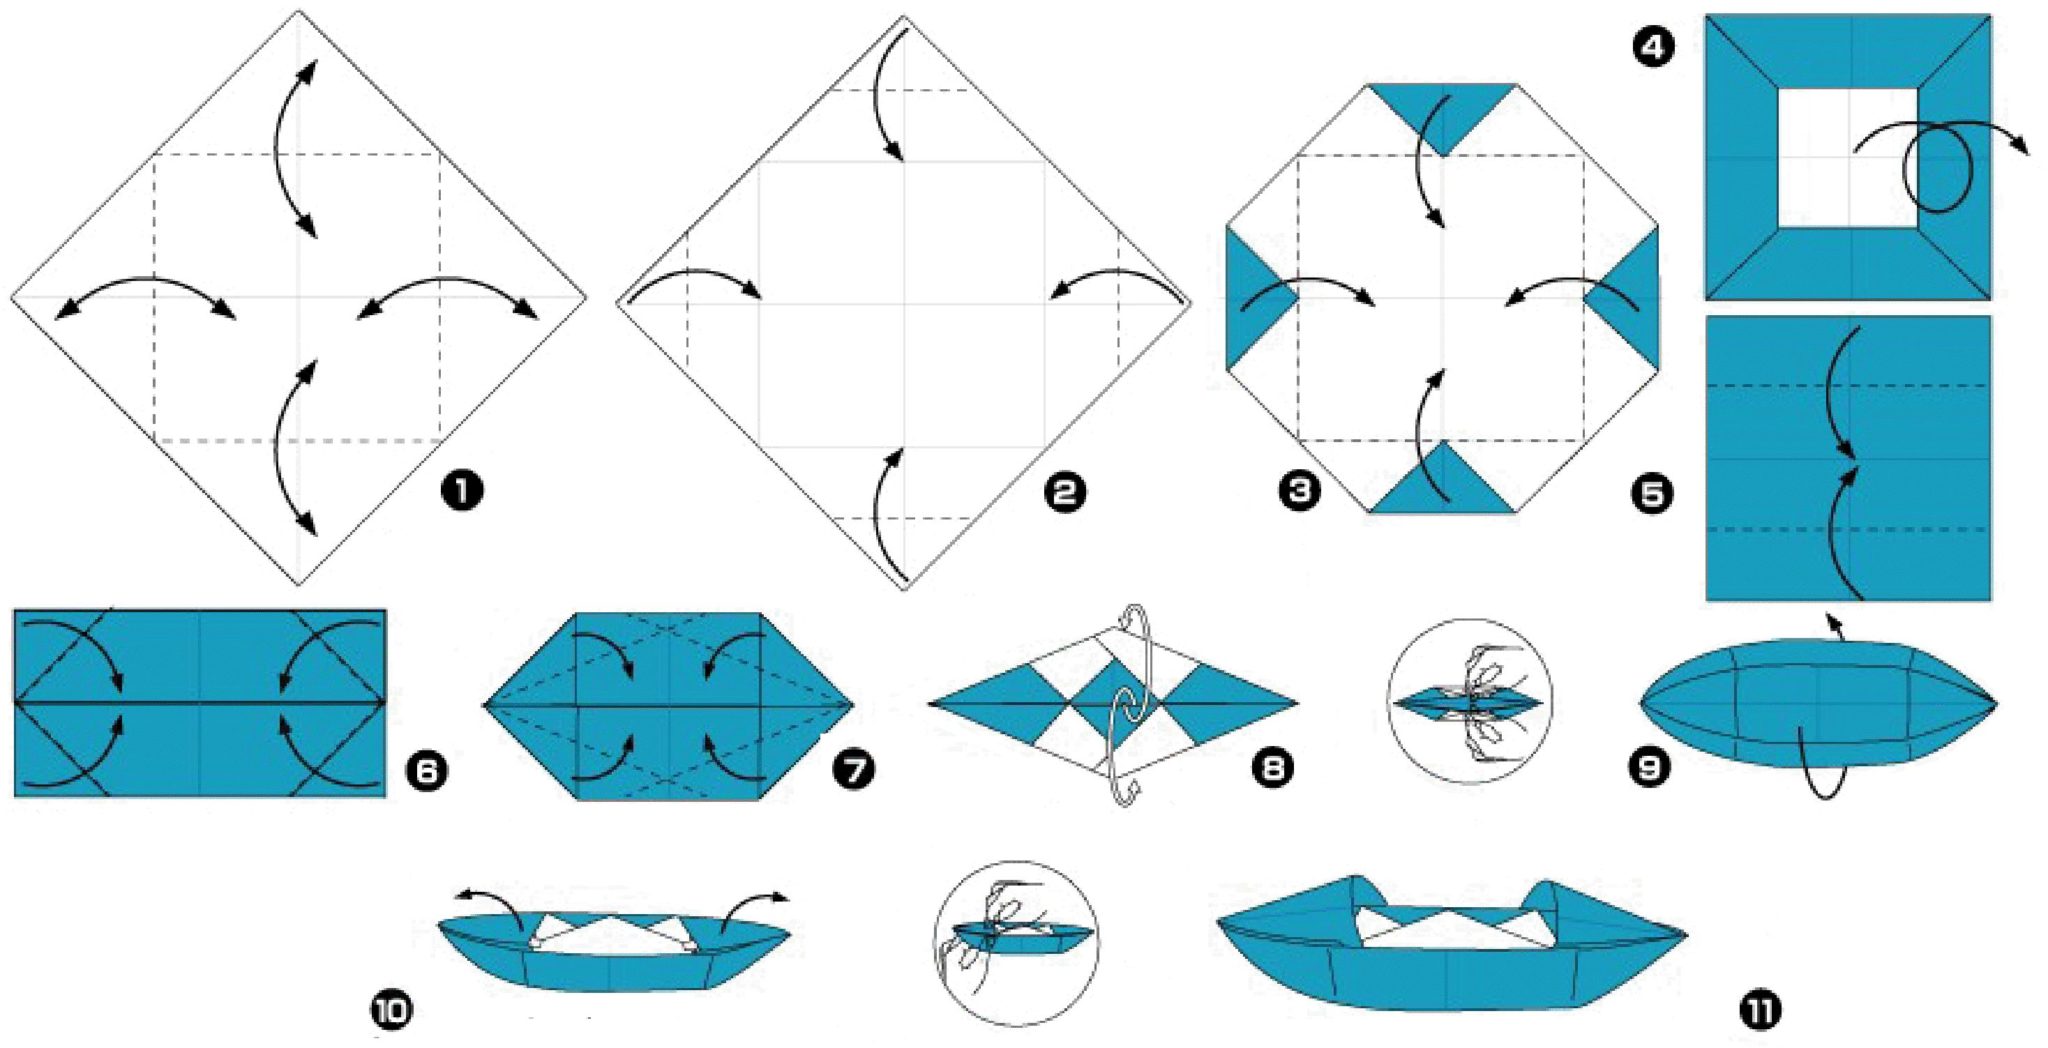 Как делаются кораблики. Кораблик оригами из бумаги для детей схема. Как сделать оригами кораблик из бумаги а4. Бумажный кораблик схема складывания пошагово из бумаги. Кораблик из бумаги схема а4.